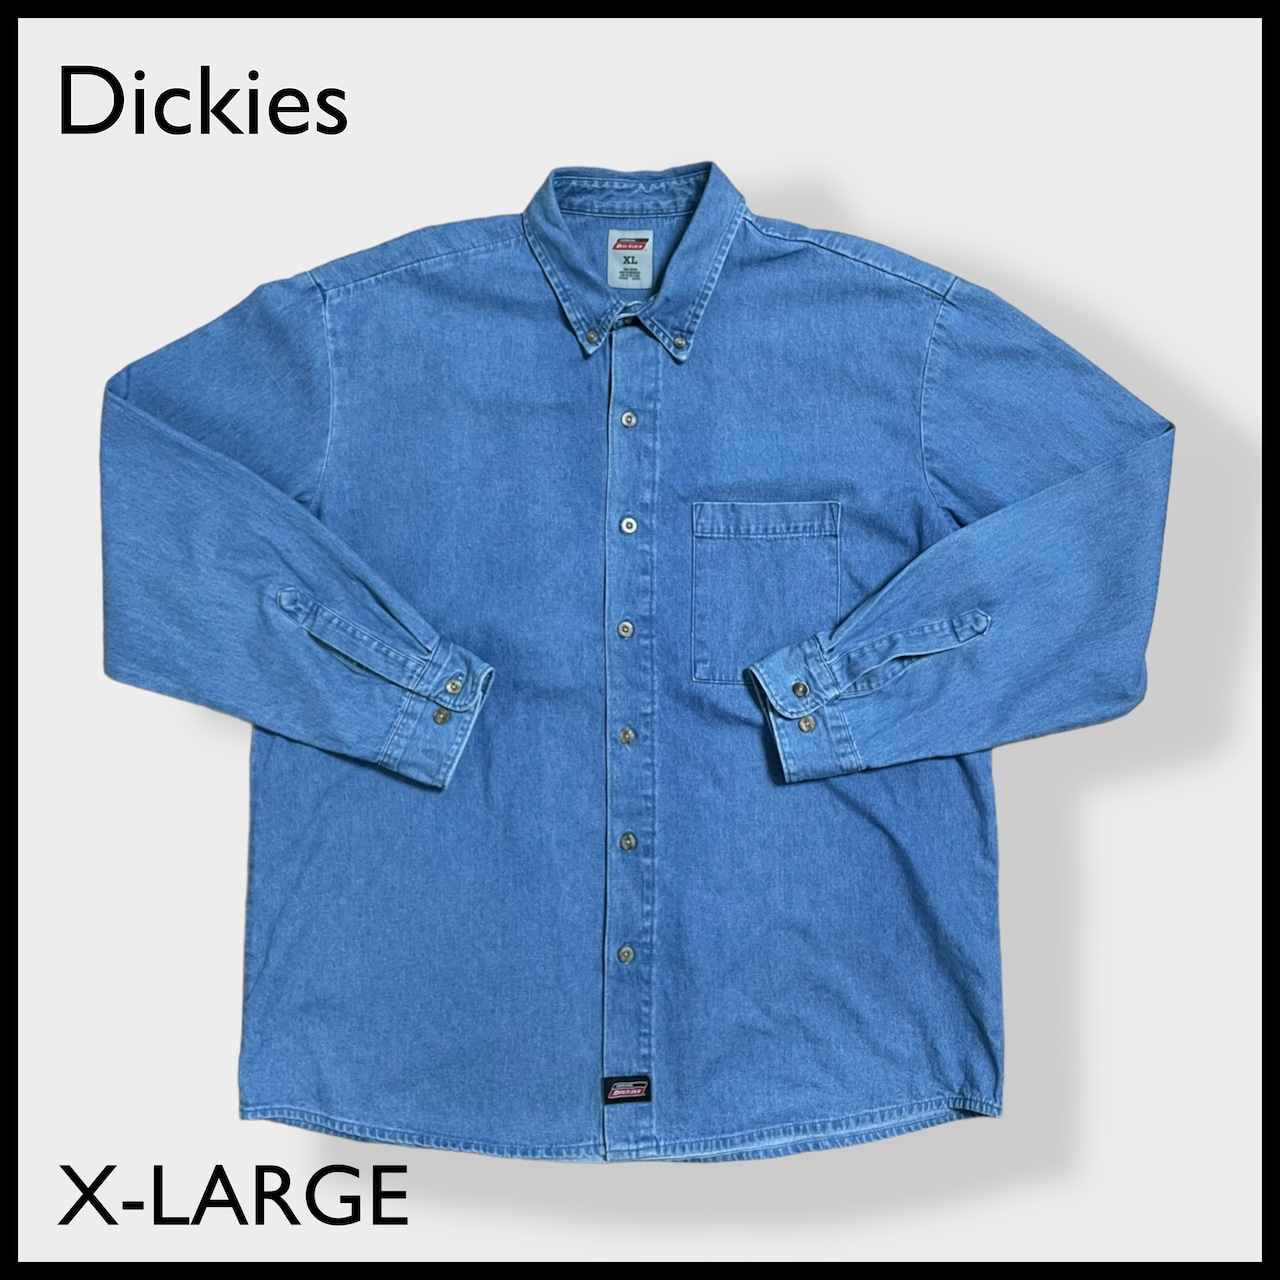 【Dickies】デニムシャツ ボタンダウン カジュアルシャツ XL ビッグシルエット 長袖シャツ ディッキーズ US古着